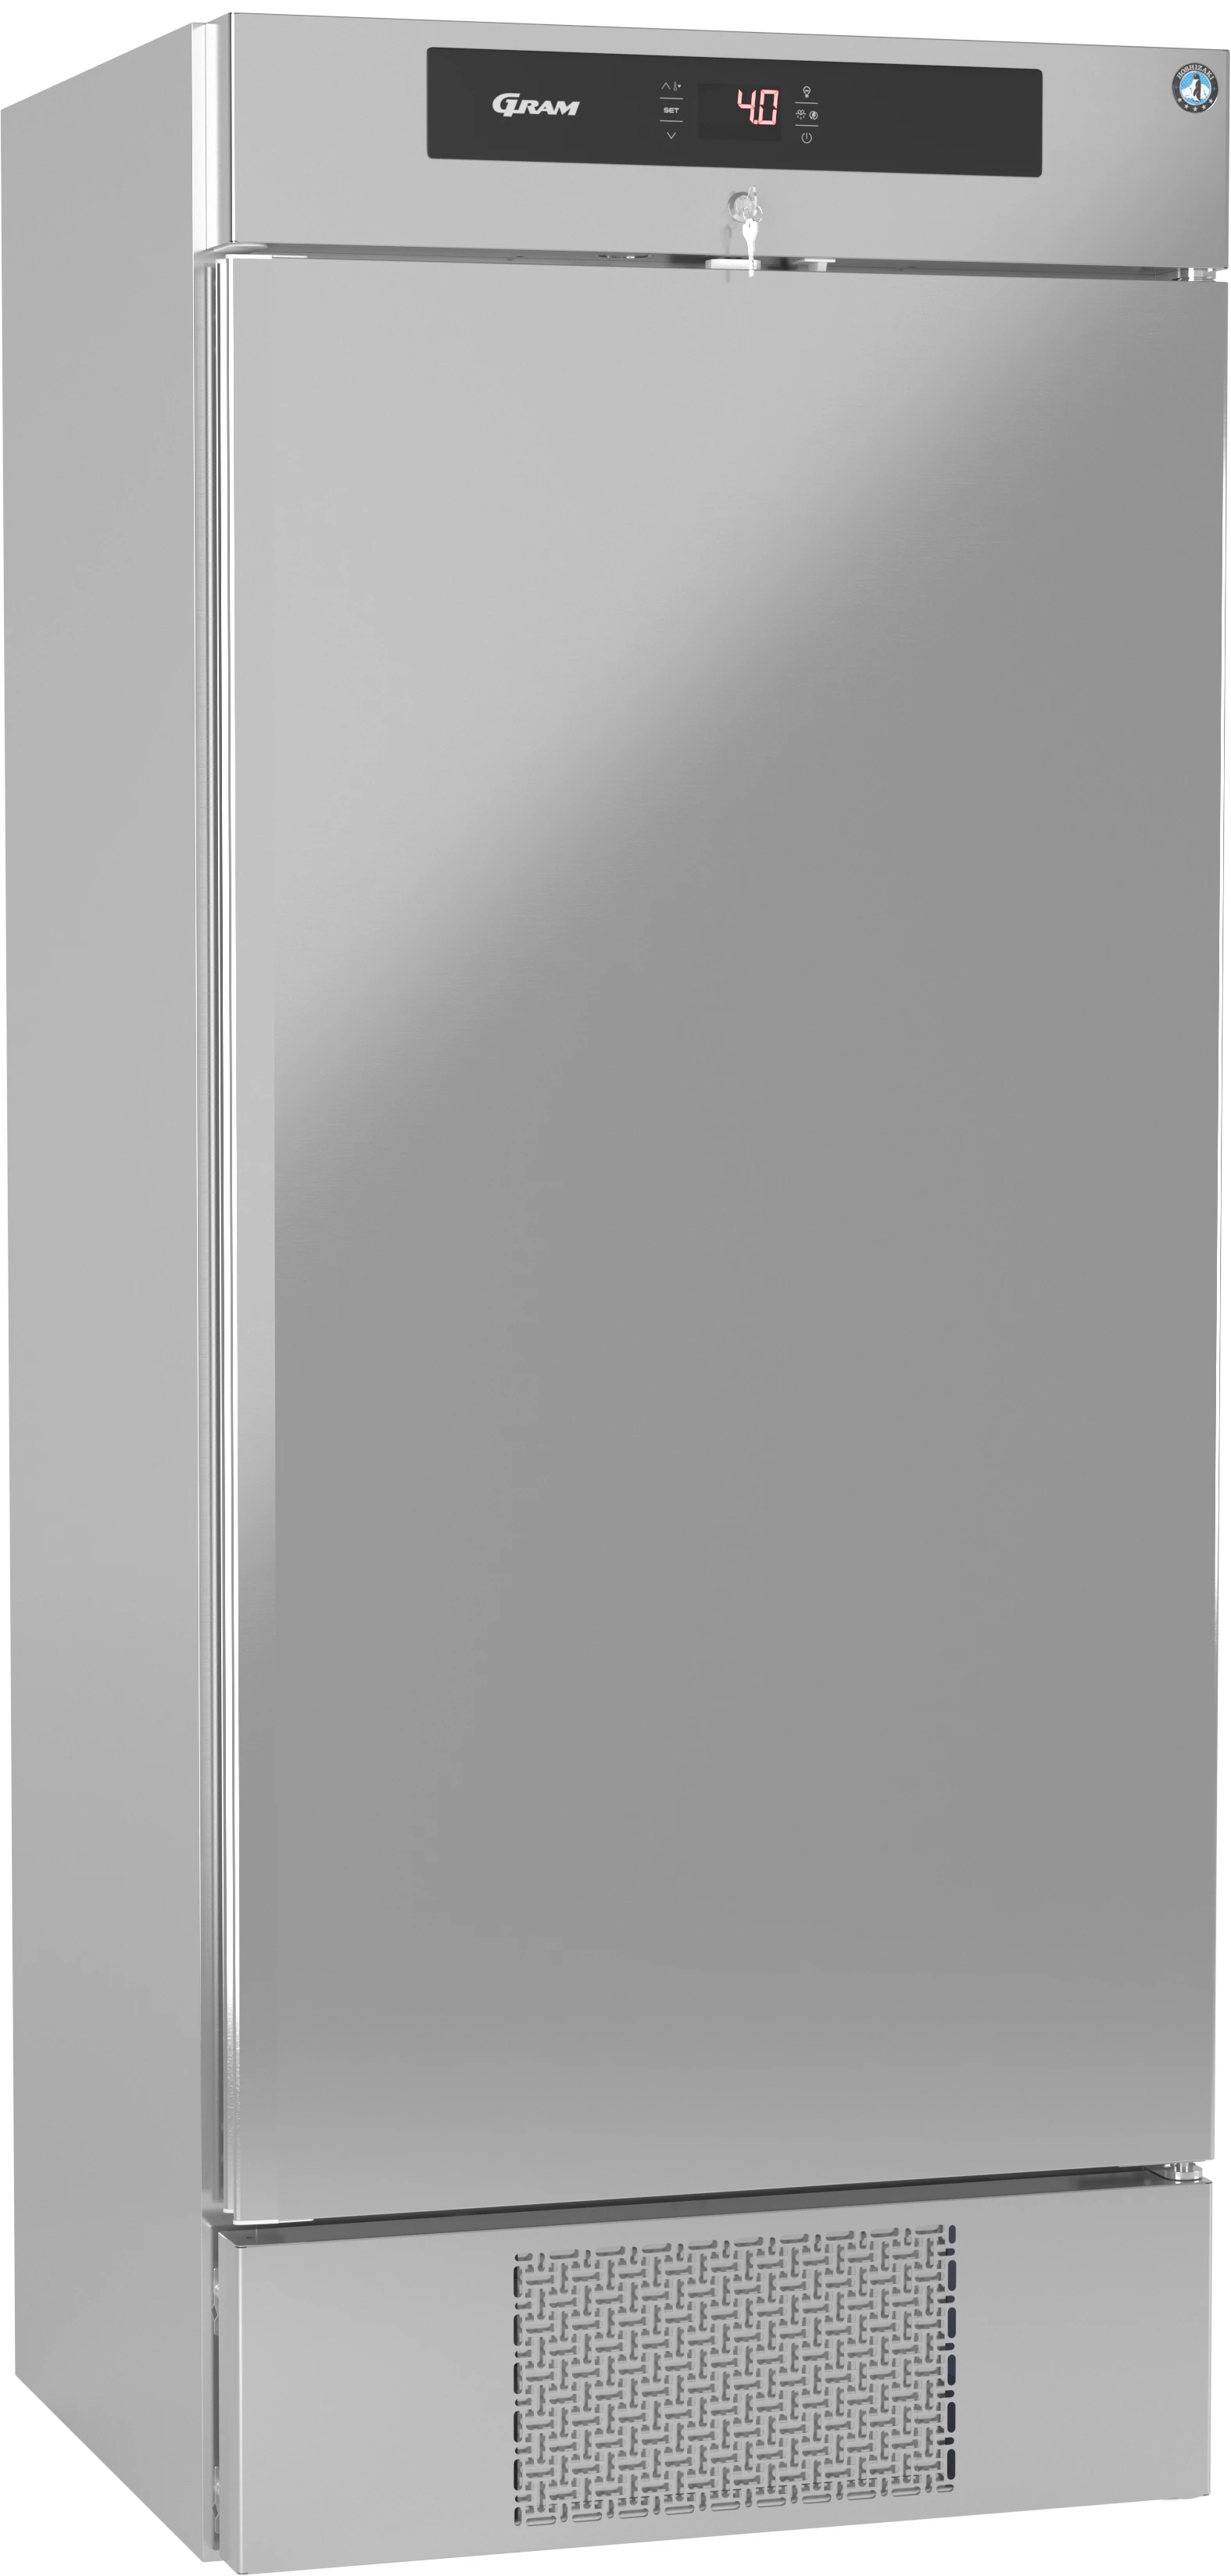 Gram Premier MBW80 DR køleskab